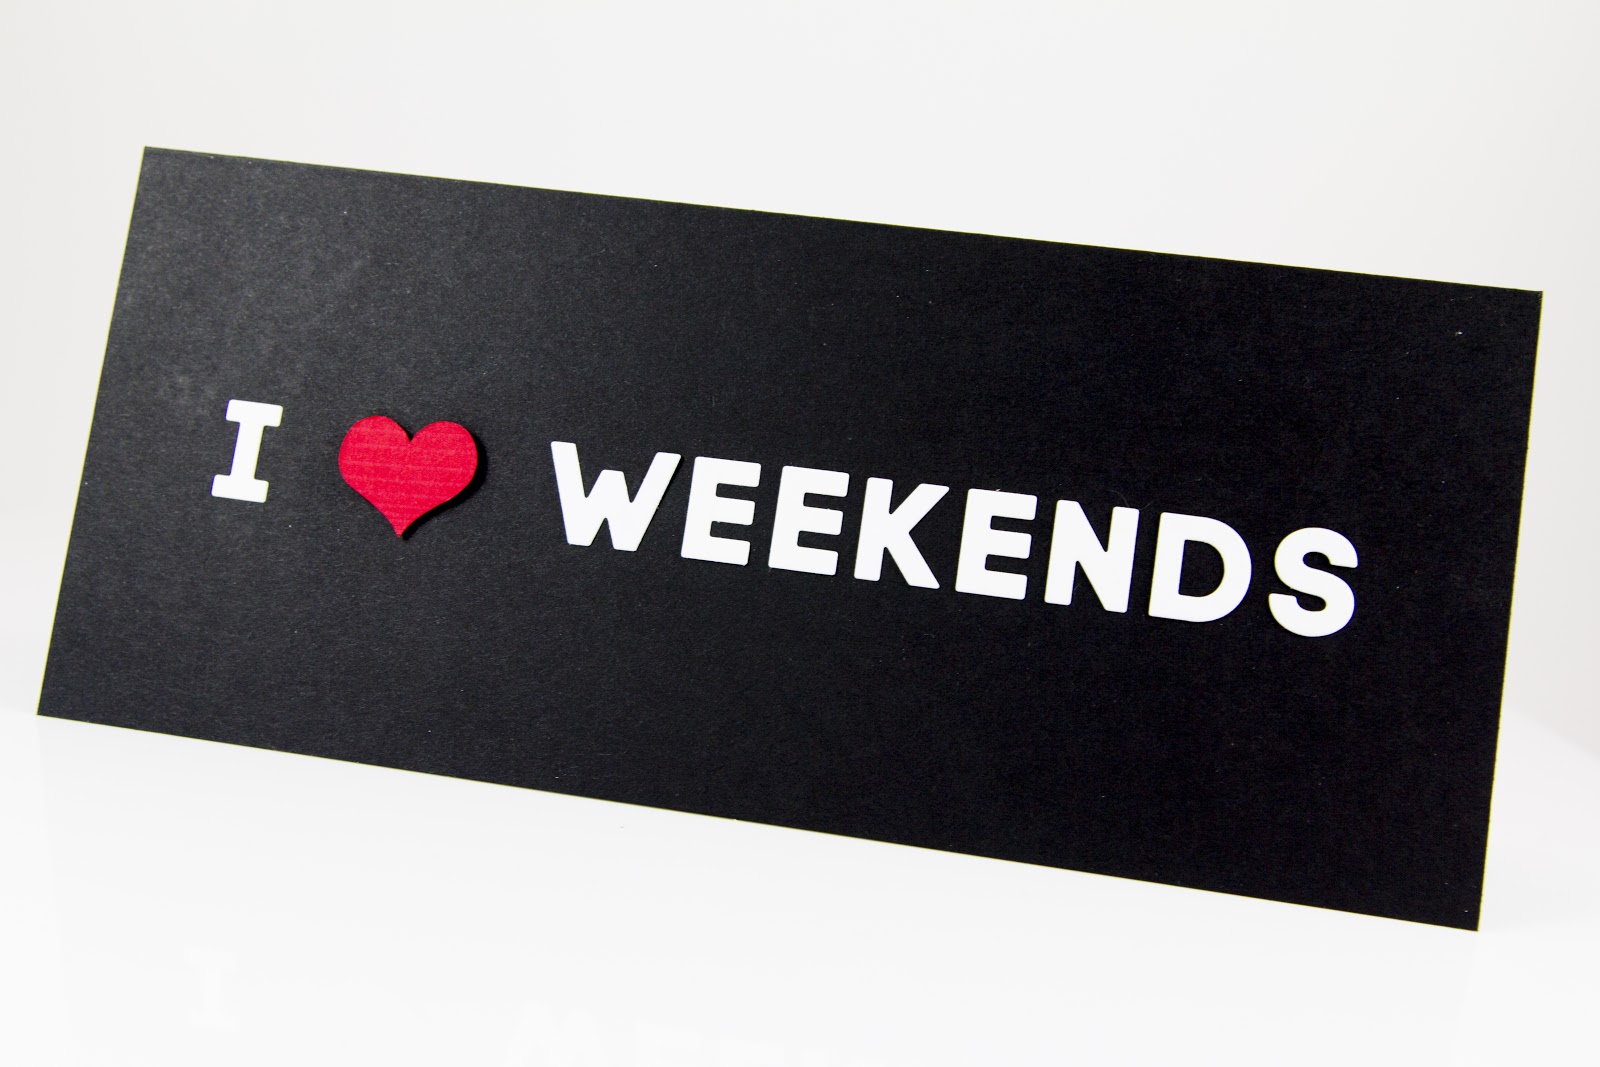 Weekend please. Weekend надпись. Уикенд картинки. Weekends надпись. Weekend выходные.